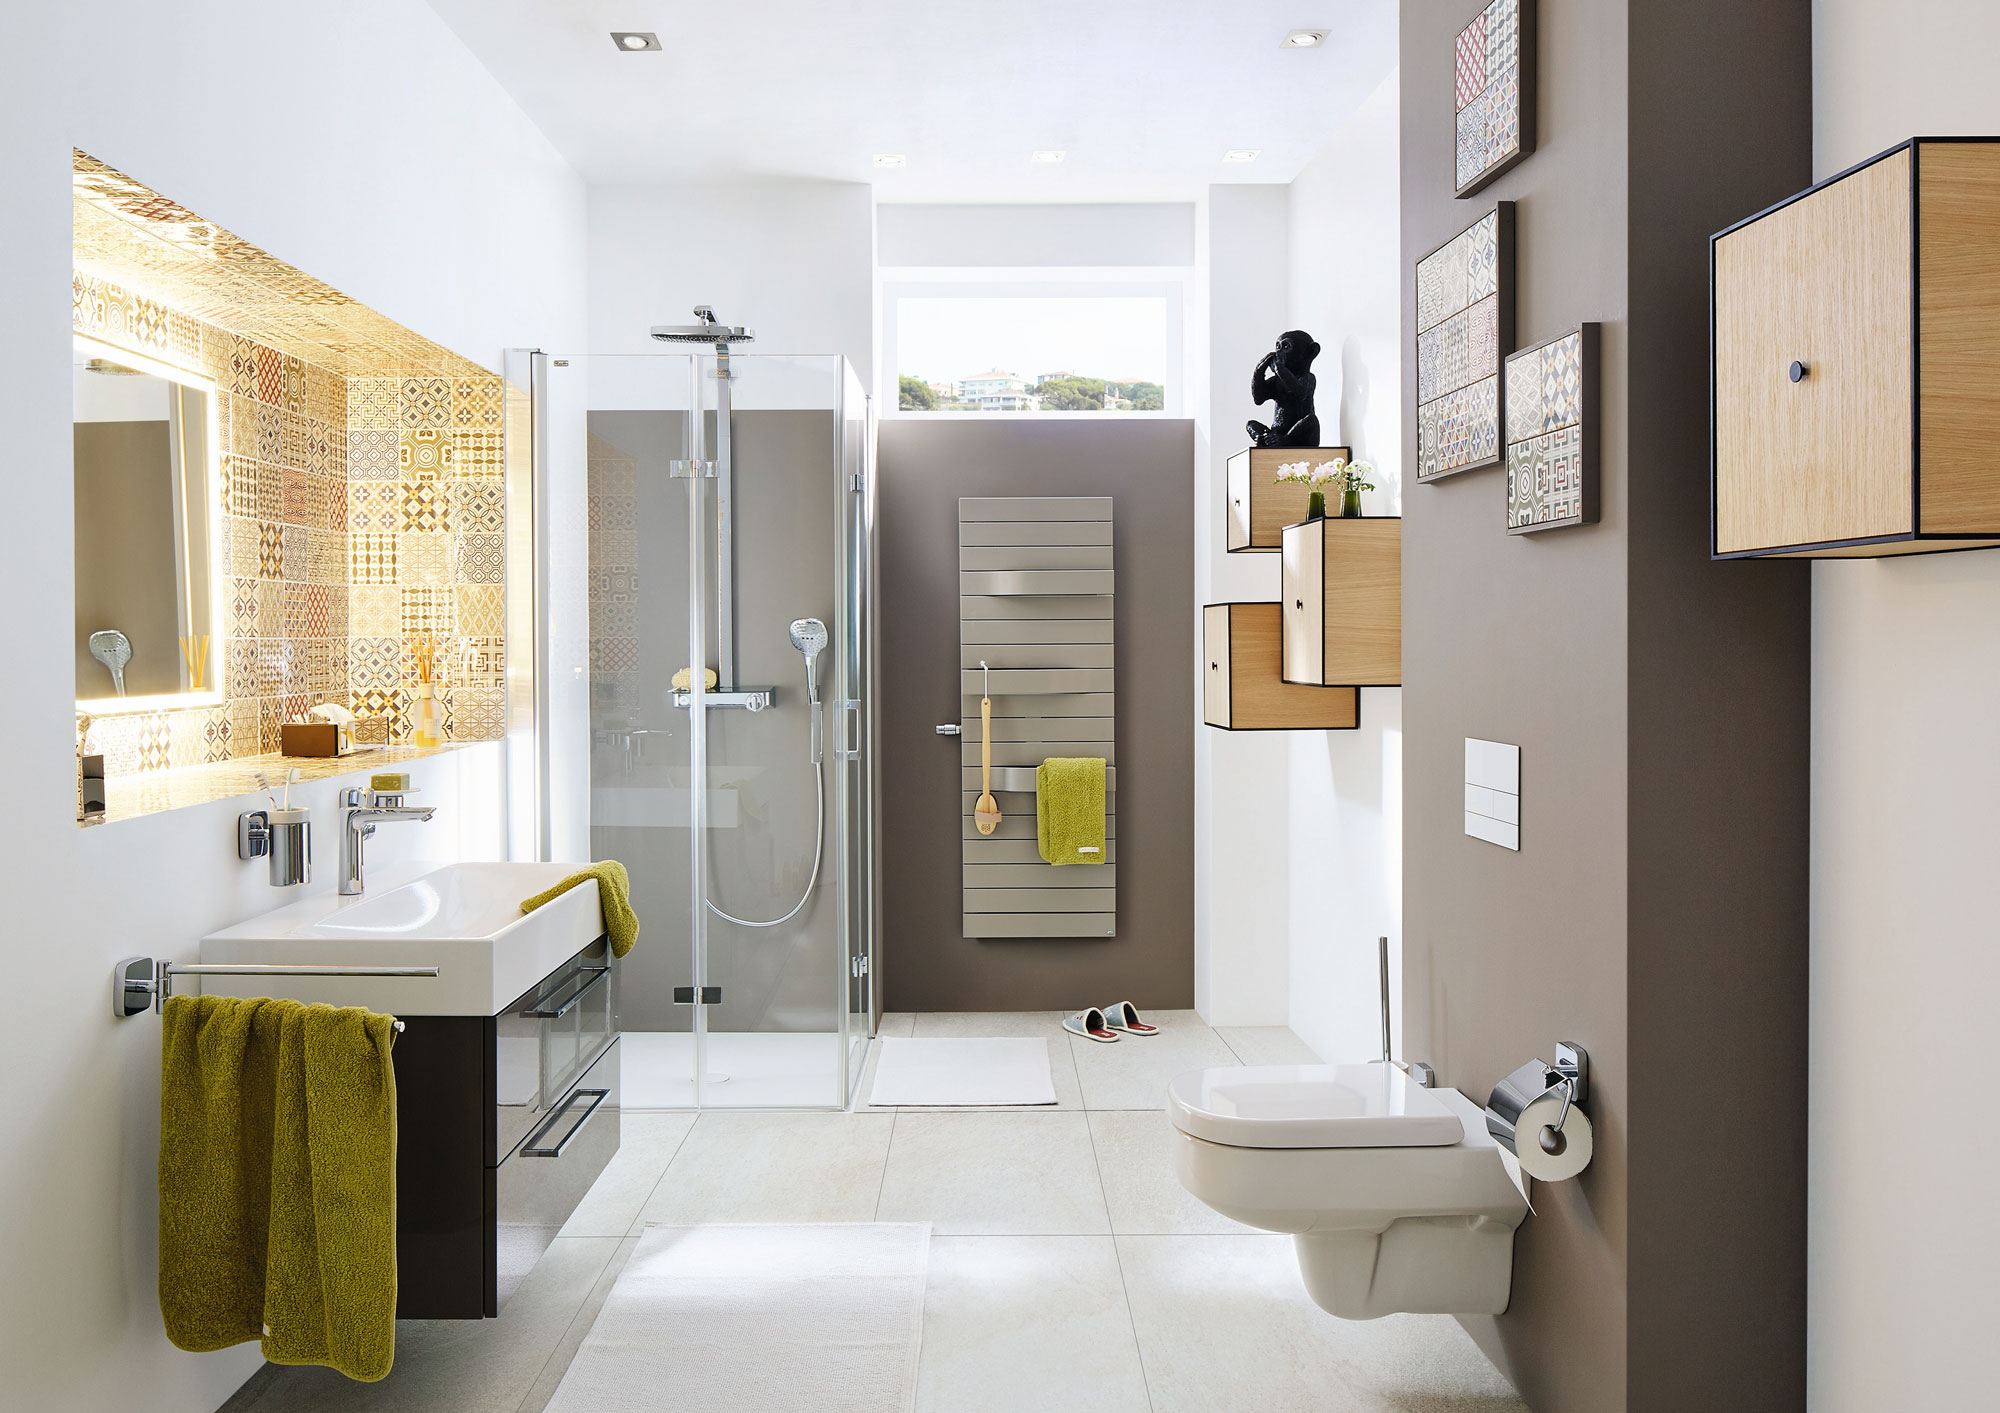 Farbe im Bad: braune Wände, gelbe Akzente, bodenebene Dusche